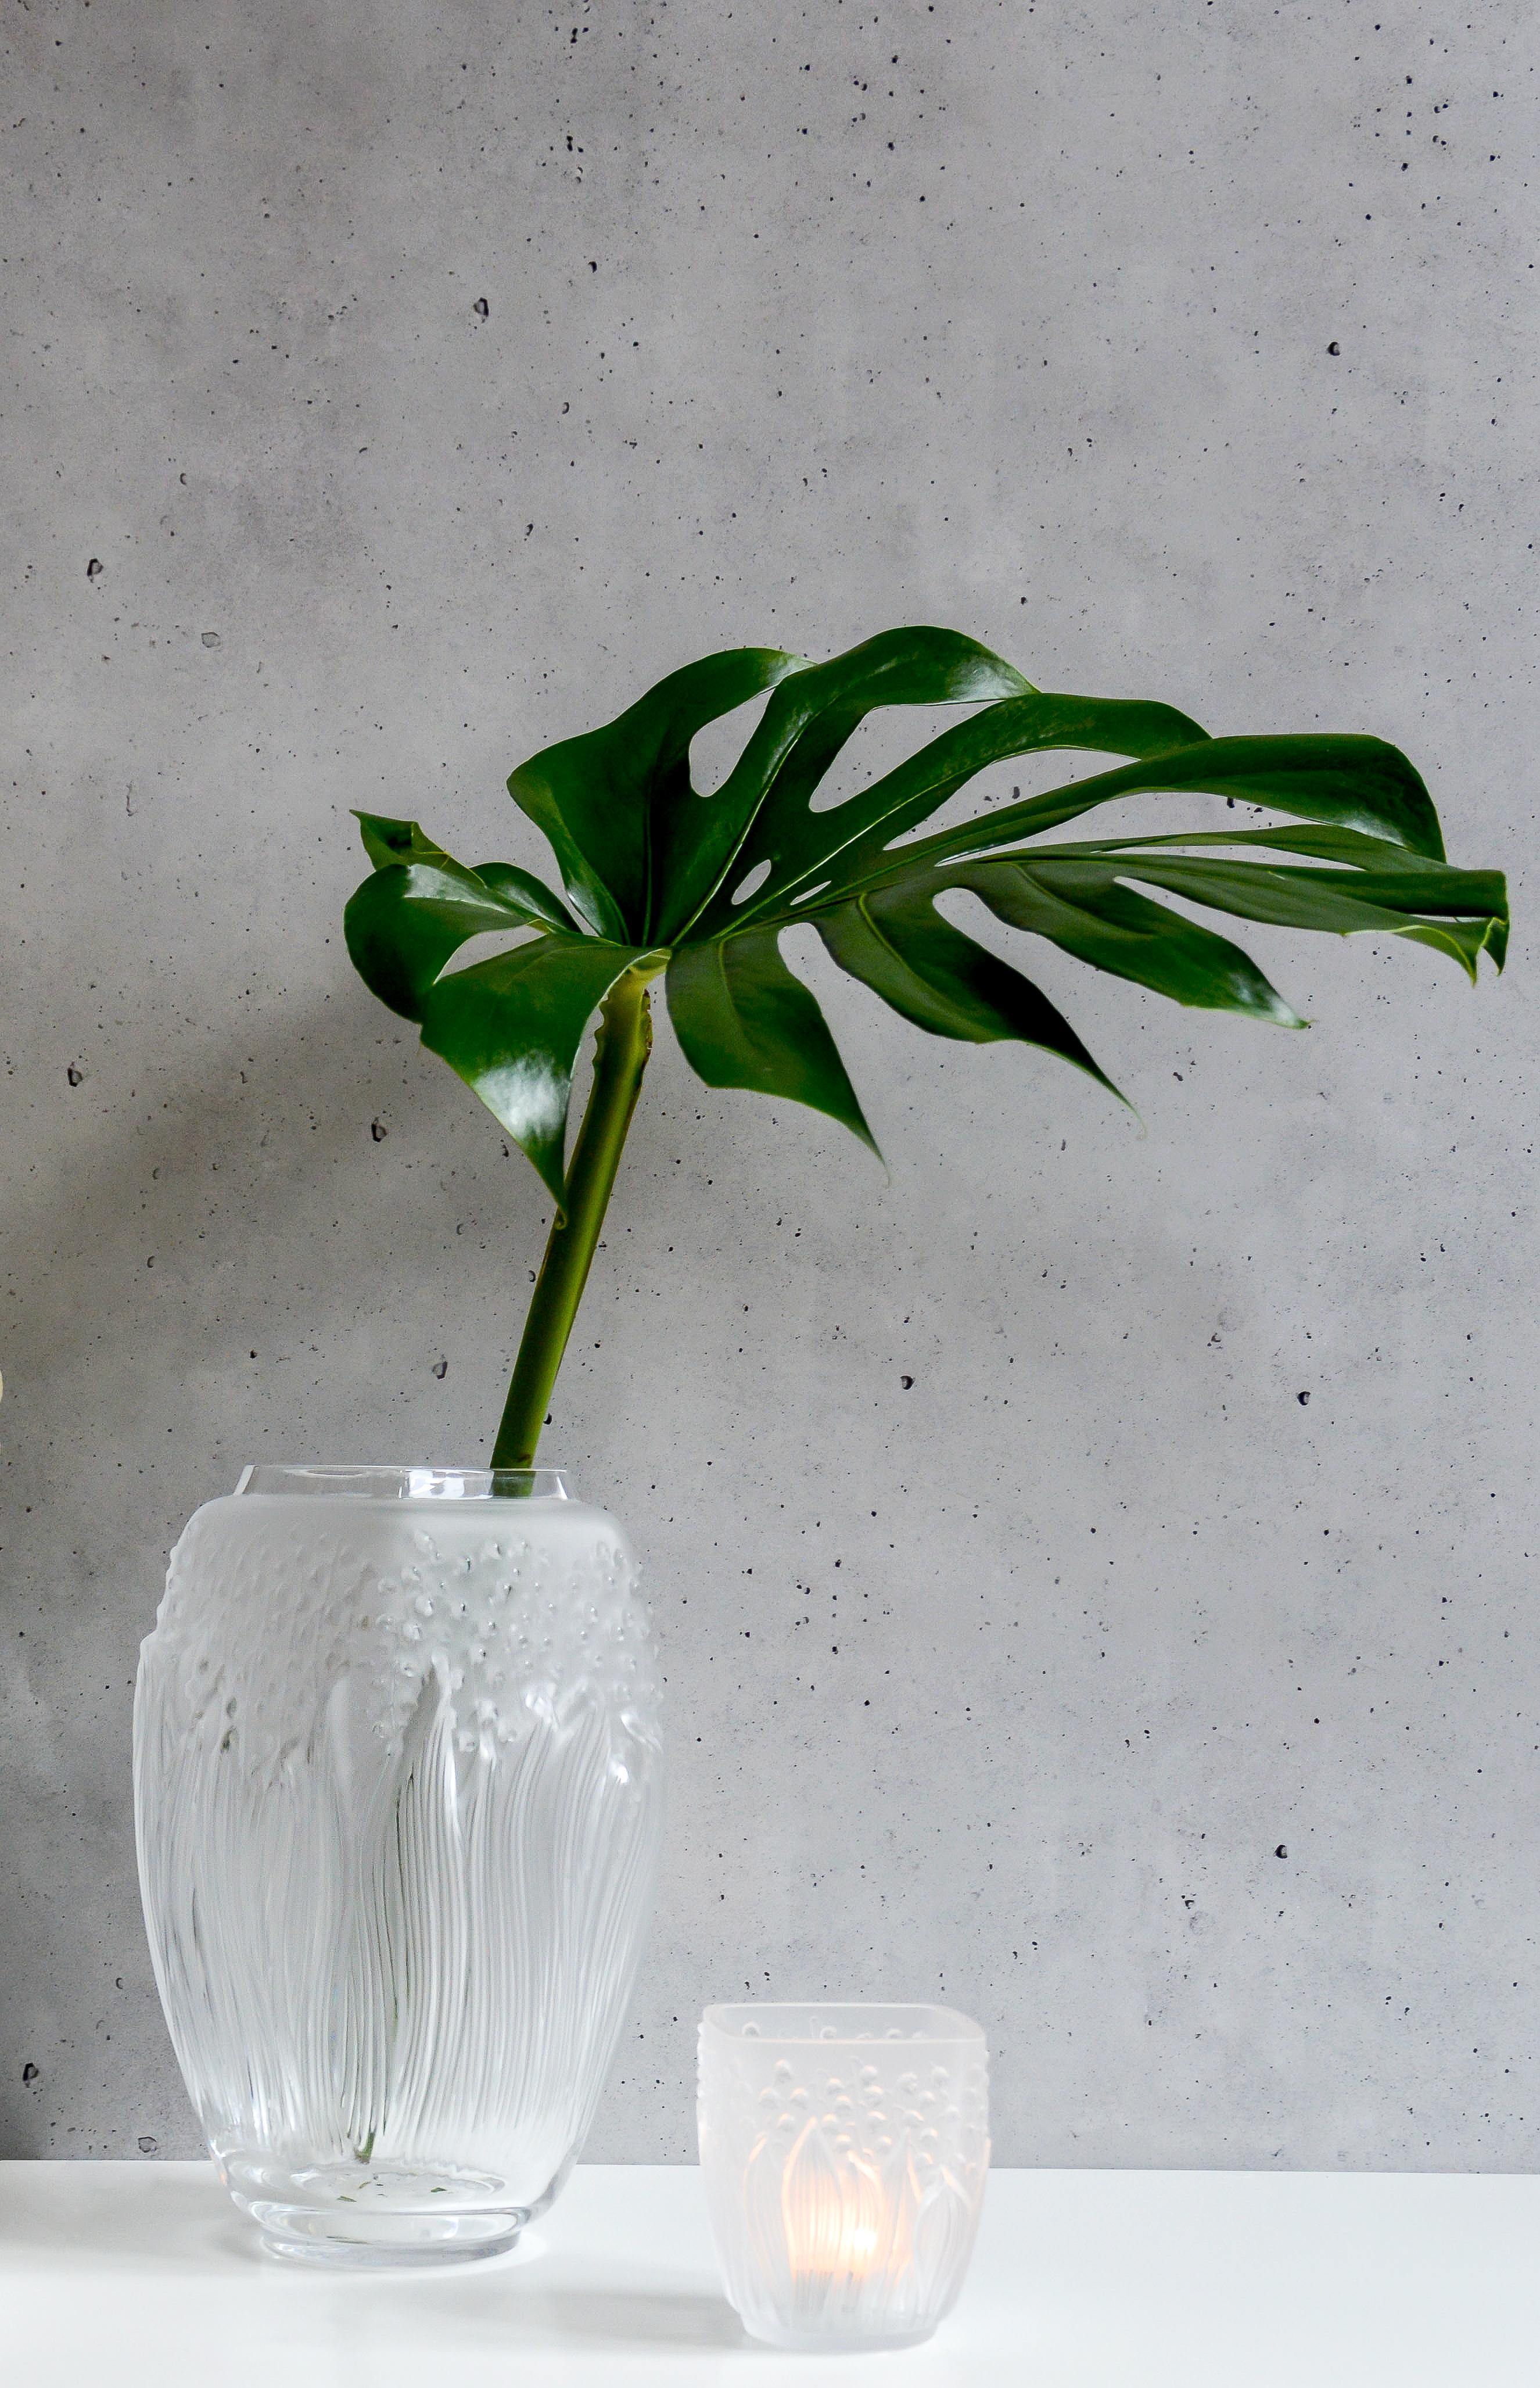 Symbole de chance et fleur préférée de René Lalique, le muguet joue l'accumulation sur ce vase. Les cloches légères et délicates se révèlent derrière les longues feuilles ondulantes, comme bercées par le vent. La forme carrée contraste avec les